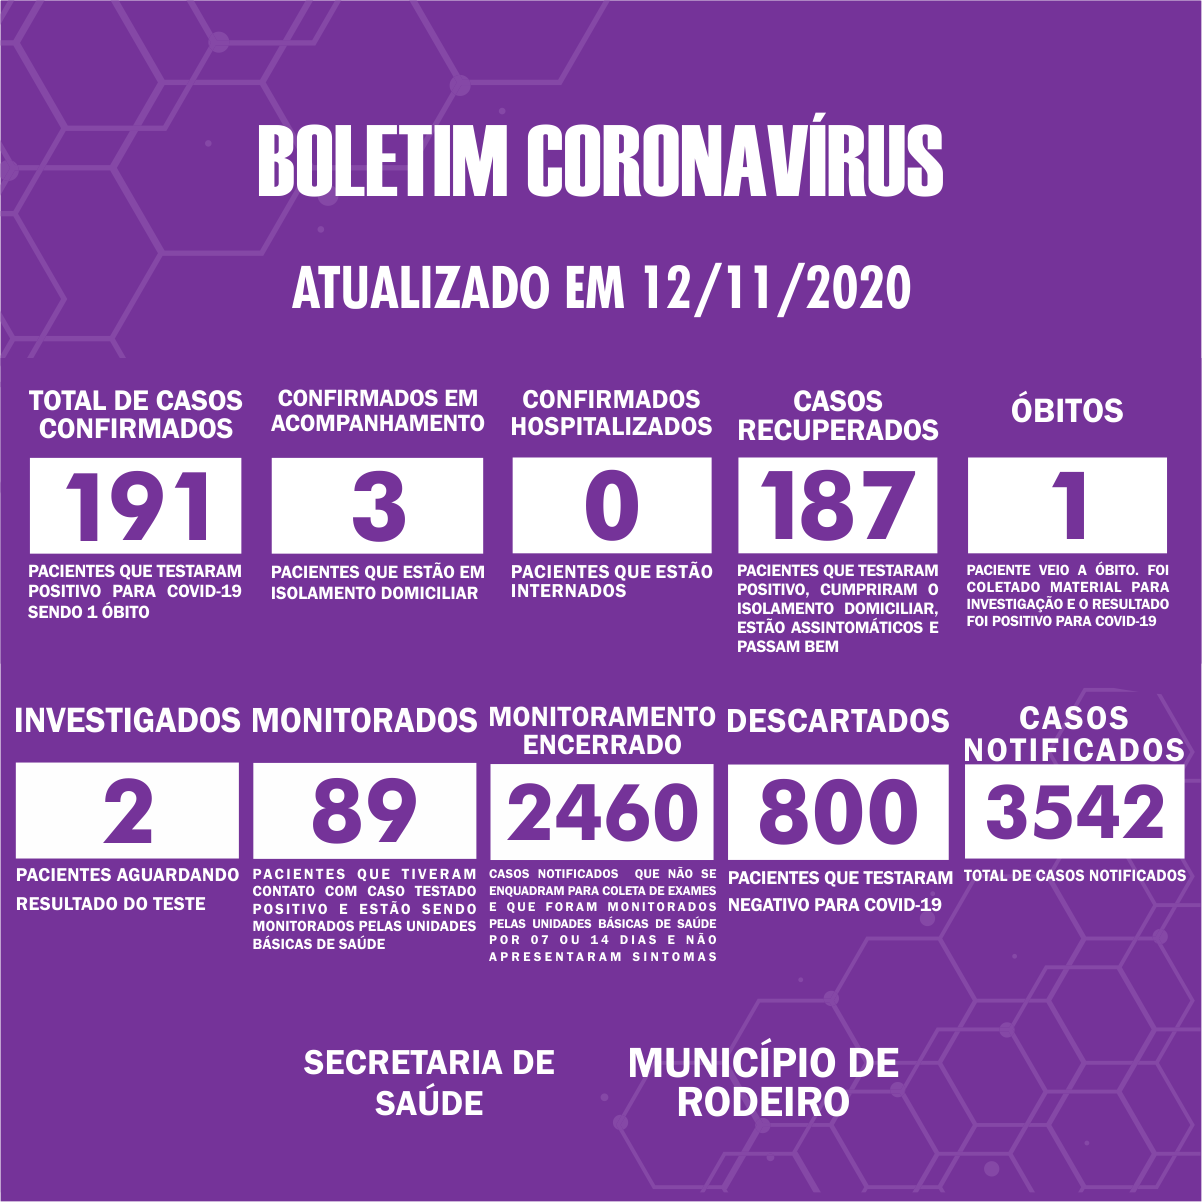 Boletim Epidemiológico do Município de Rodeiro sobre coronavírus, atualizado em 12/11/2020